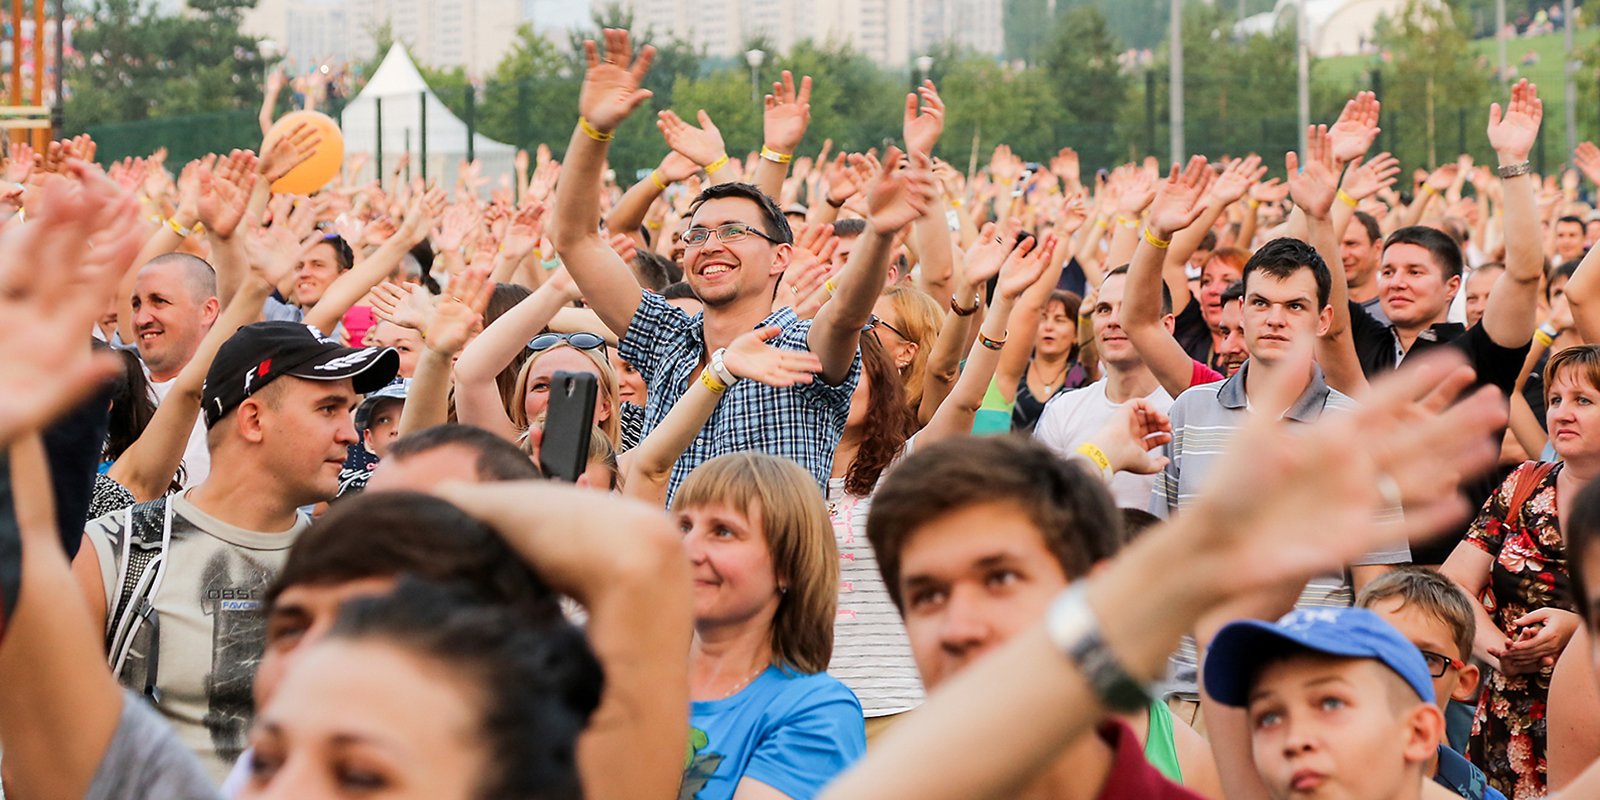 Фестиваль "PRO лето" пройдет на проспекте Сахарова и ВДНХ 31 августа и 1 сентября